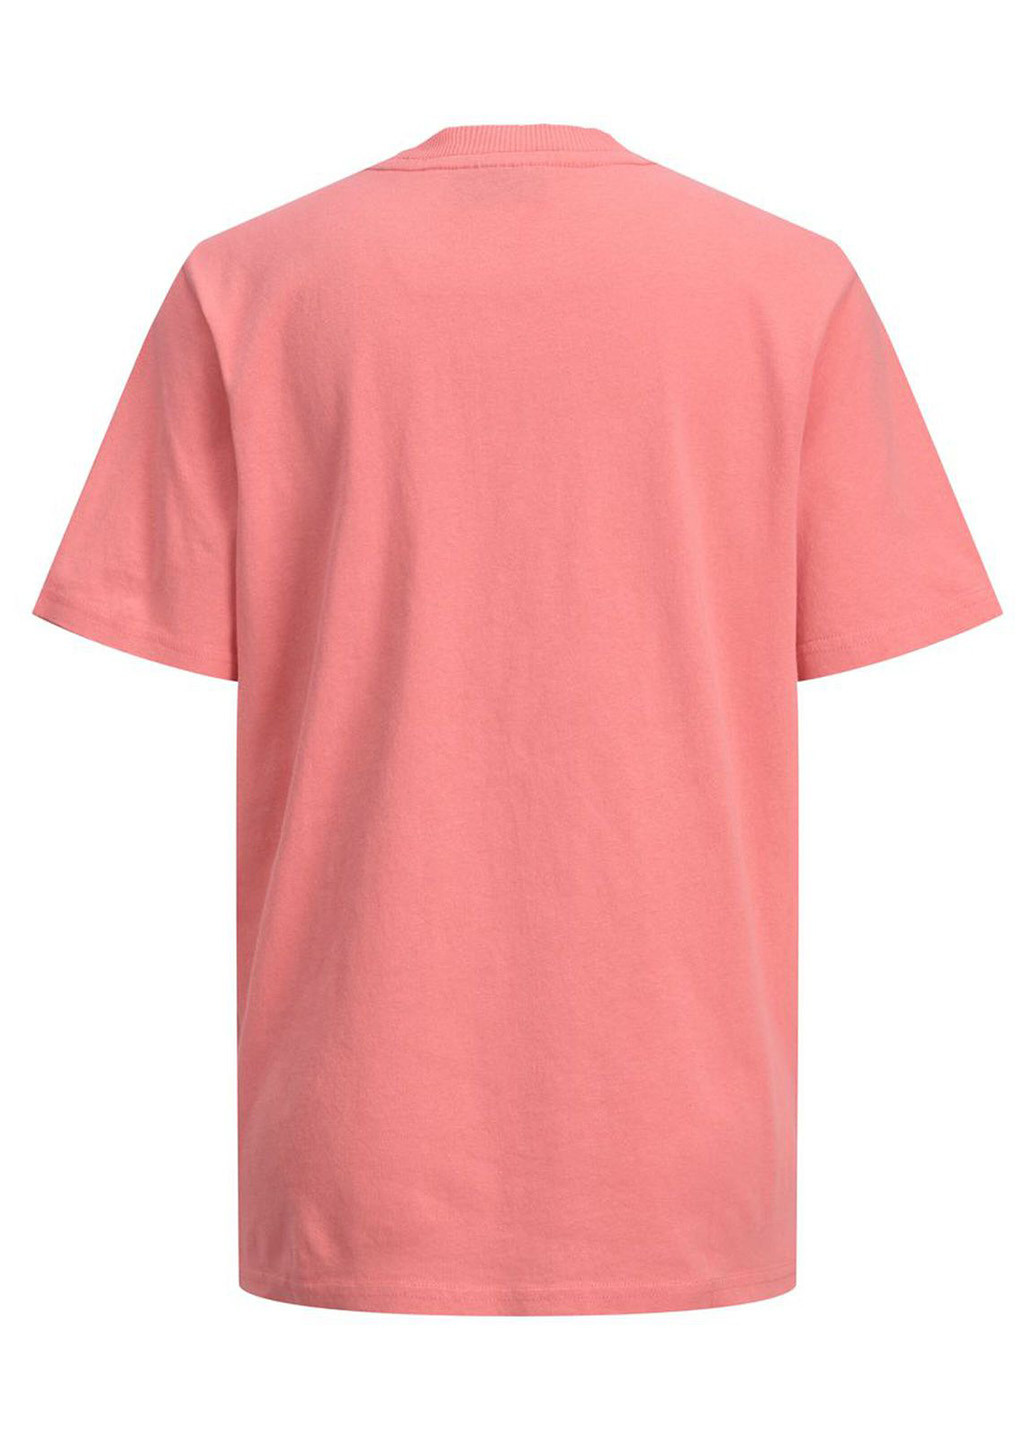 Рожева літня футболка JJXX